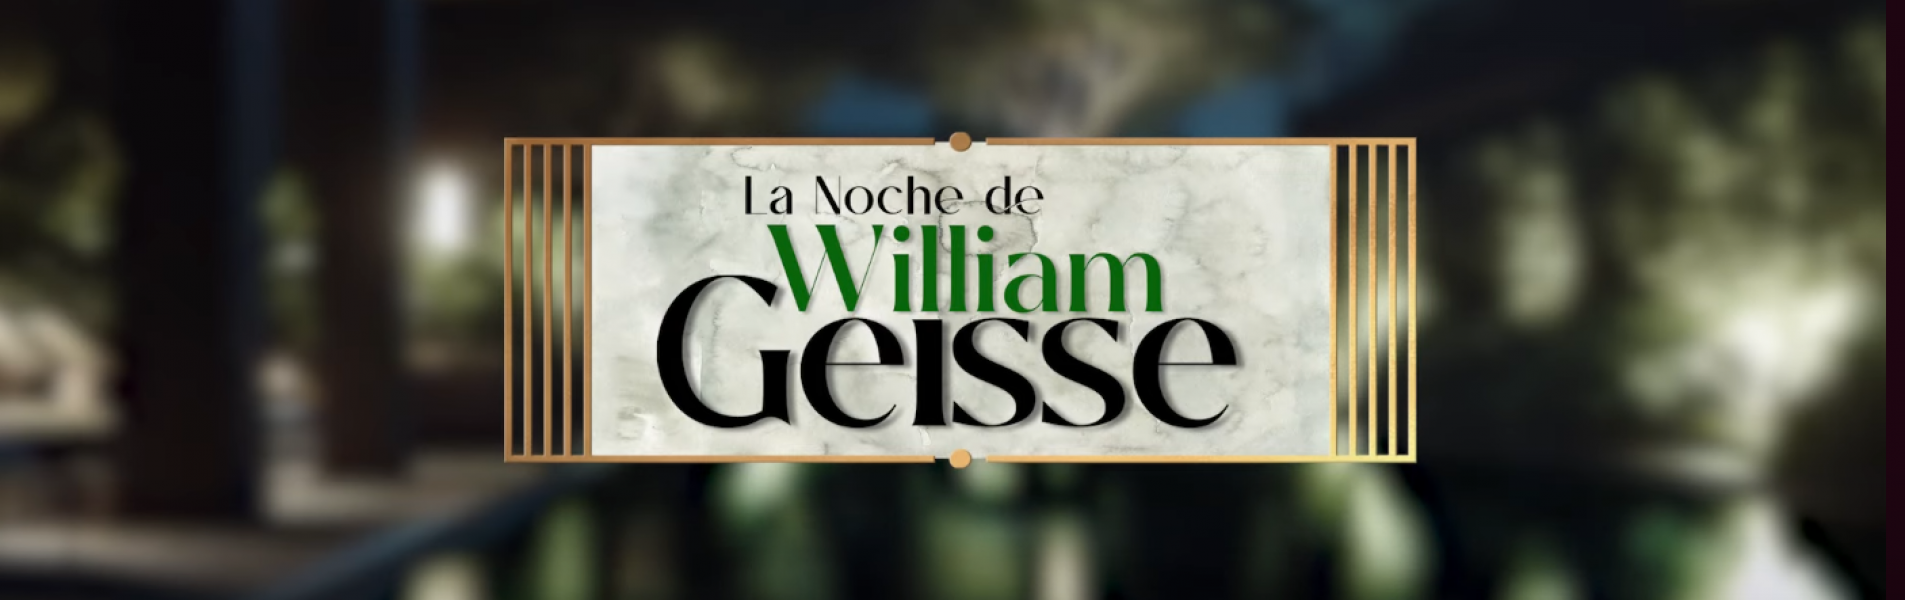 Noche de William Geisse